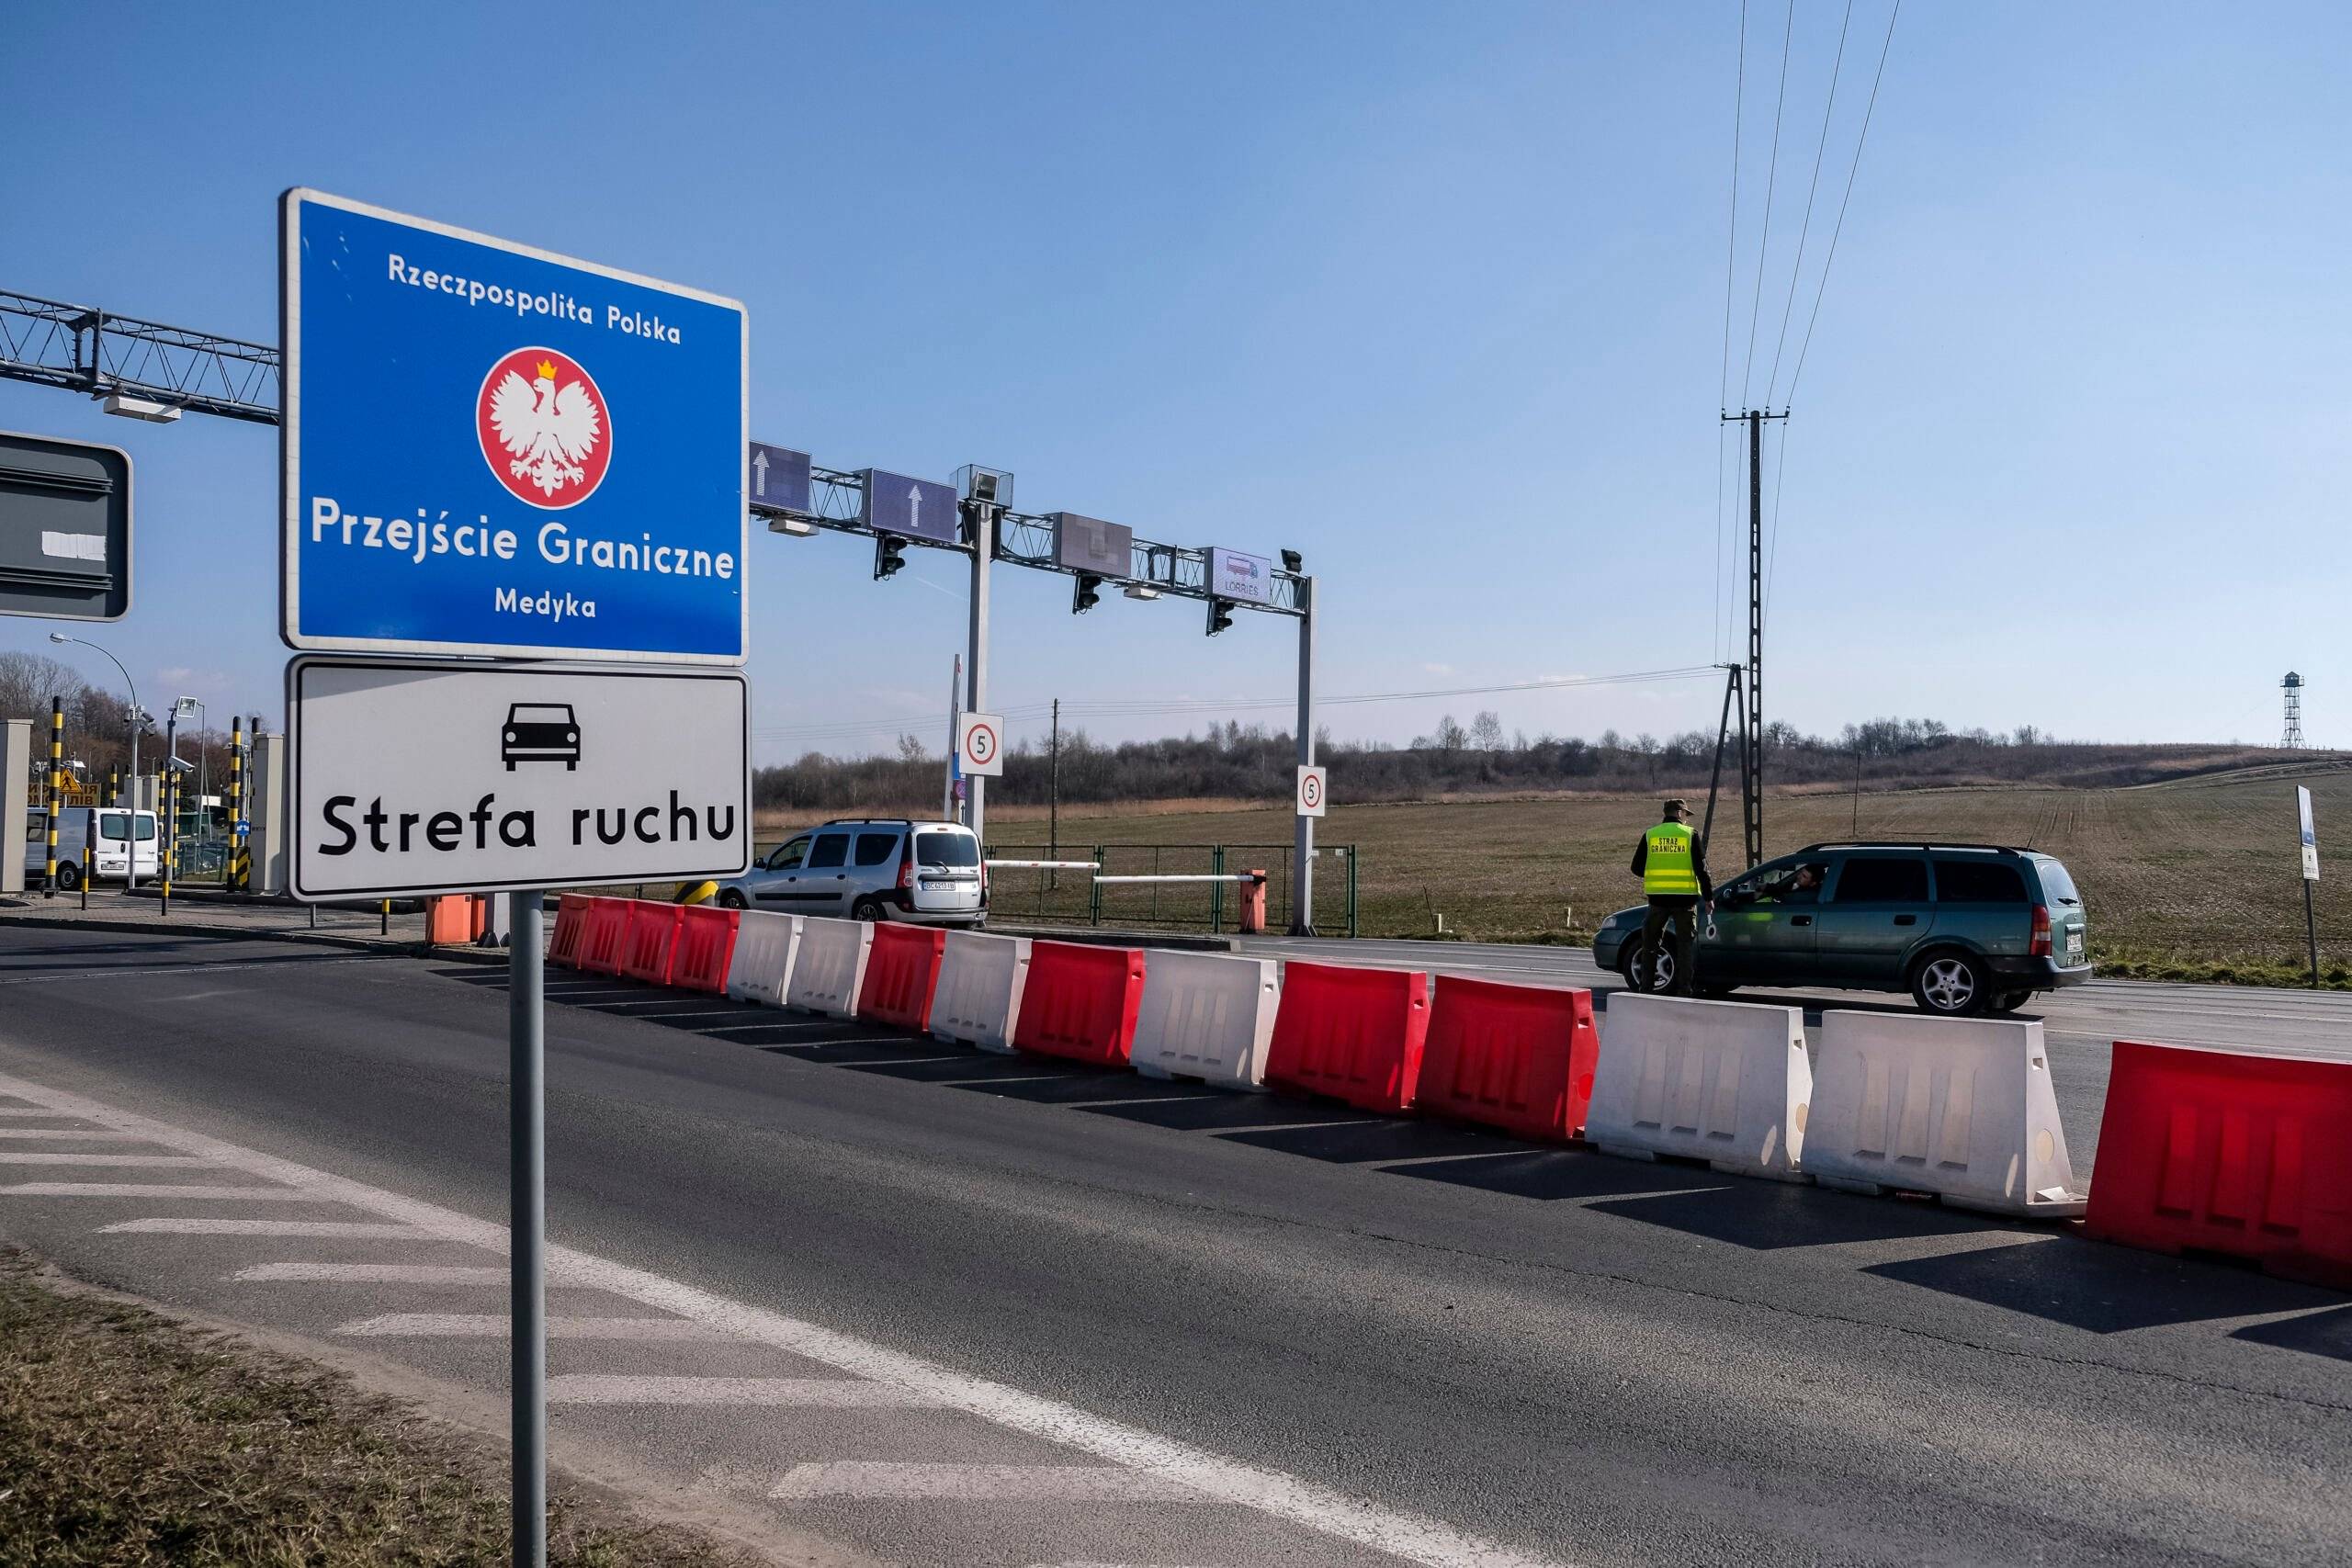 Przejście drogowe z napisem "Granica Państwa. Rzeczpospolita Polska"